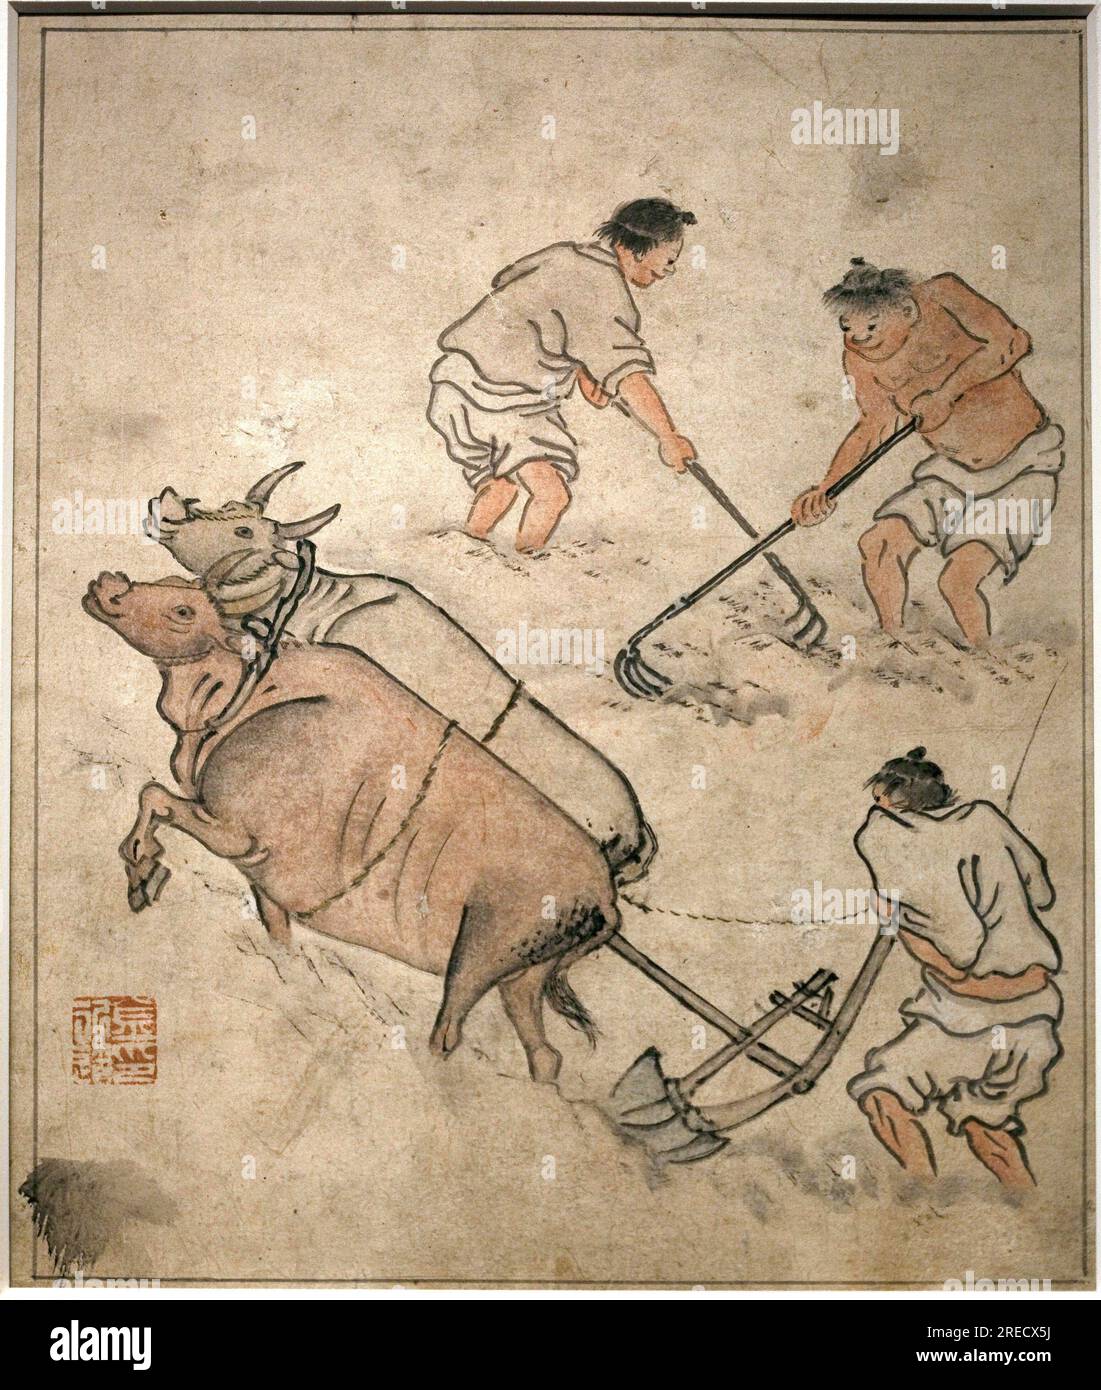 Scene de travail agricole. Peinture de Danwon (Kim Hongdo) (1745-1806), encre sur papier, art coreen, periode Joseon (Choson) 18e siecle. Musee National de Coree, Seoul (Coree du Sud). Stock Photo